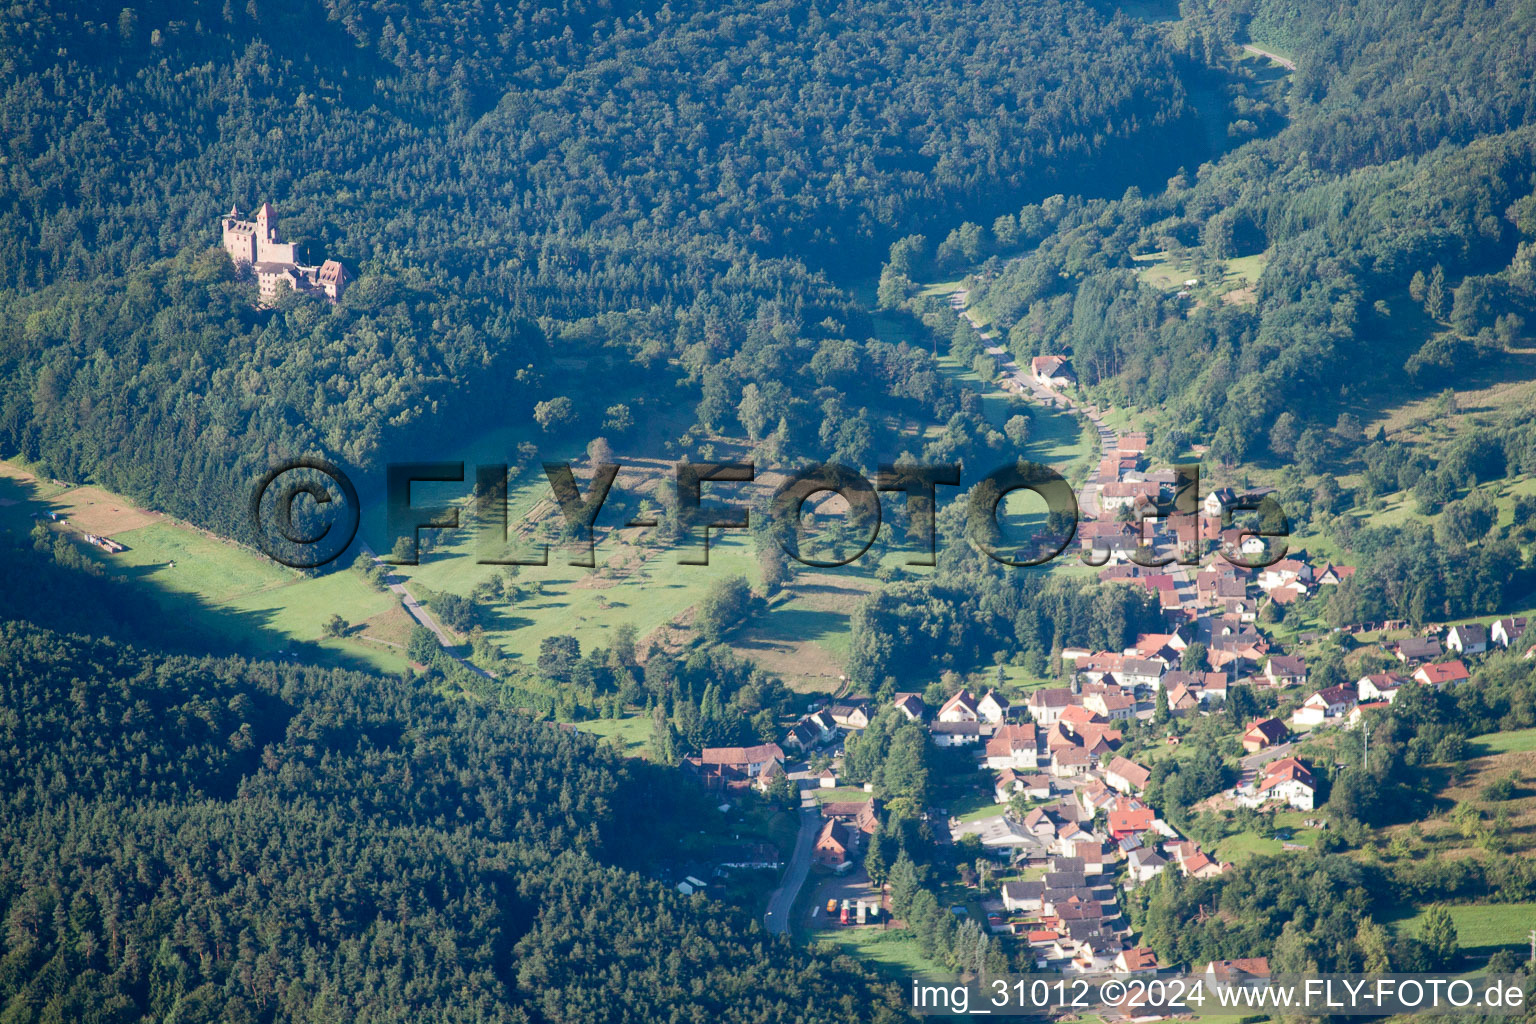 Luftbild von Erlenbach bei Dahn, Burg Berwartstein im Bundesland Rheinland-Pfalz, Deutschland